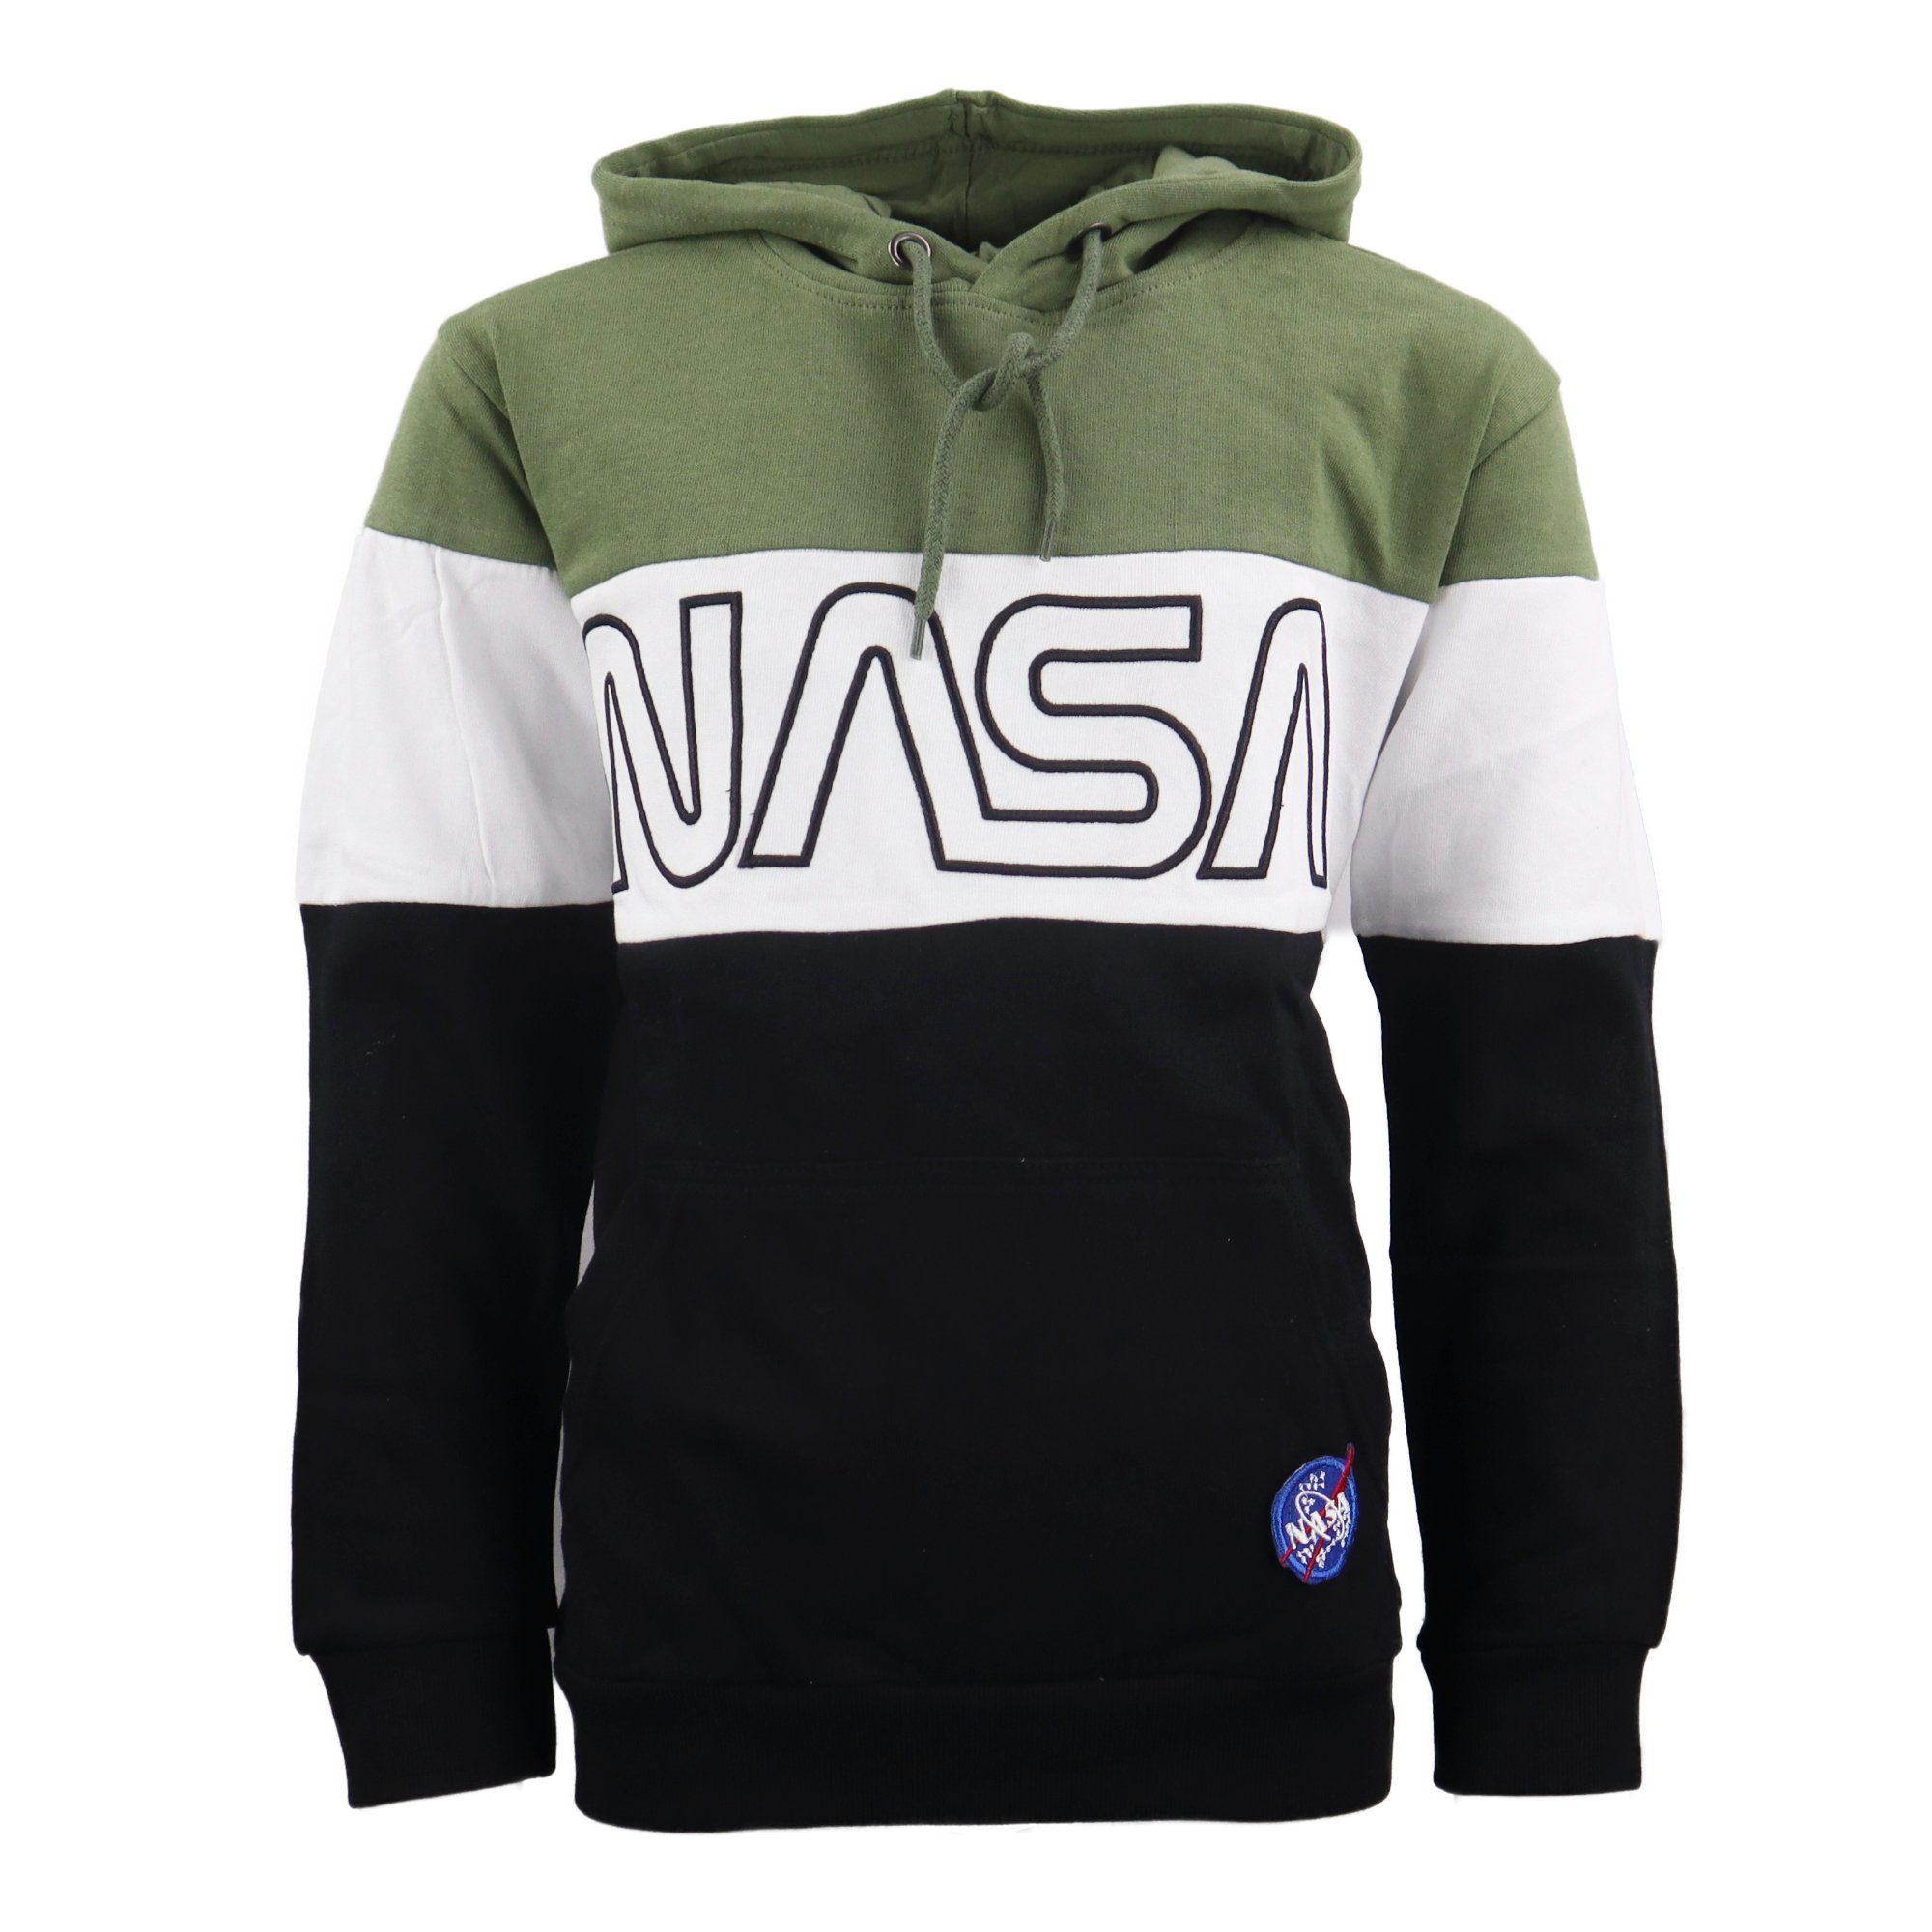 NASA Hoodie »NASA Space Center Jungen Kapuzenpullover« Gr. 134 bis 164,  100% Baumwolle online kaufen | OTTO